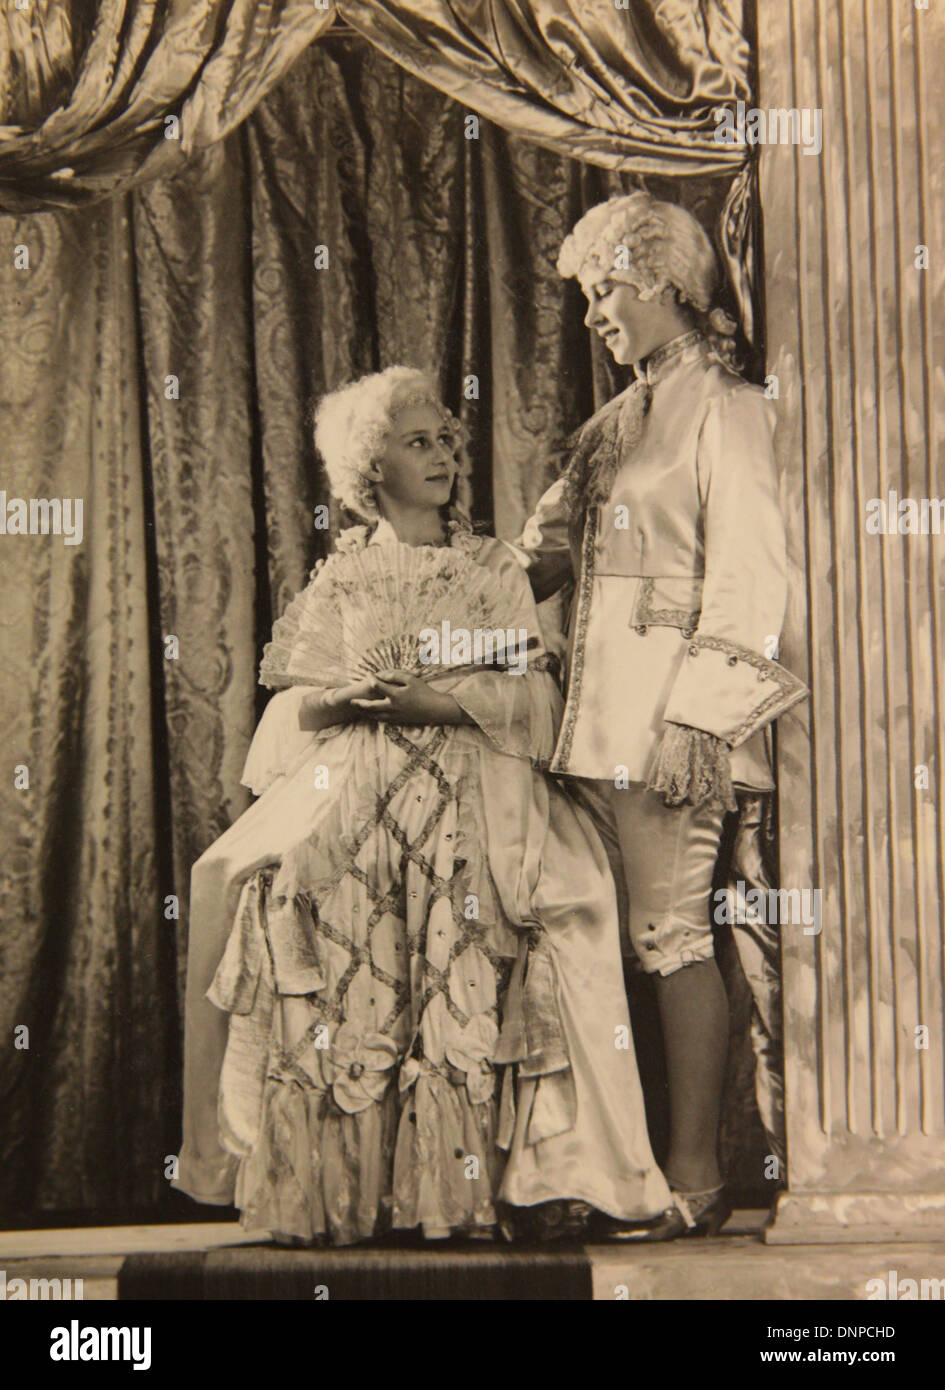 Une photographie de la princesse Margaret (à gauche) et de la princesse Elizabeth (à droite) dans le jeu Aladdin, 1943 Banque D'Images